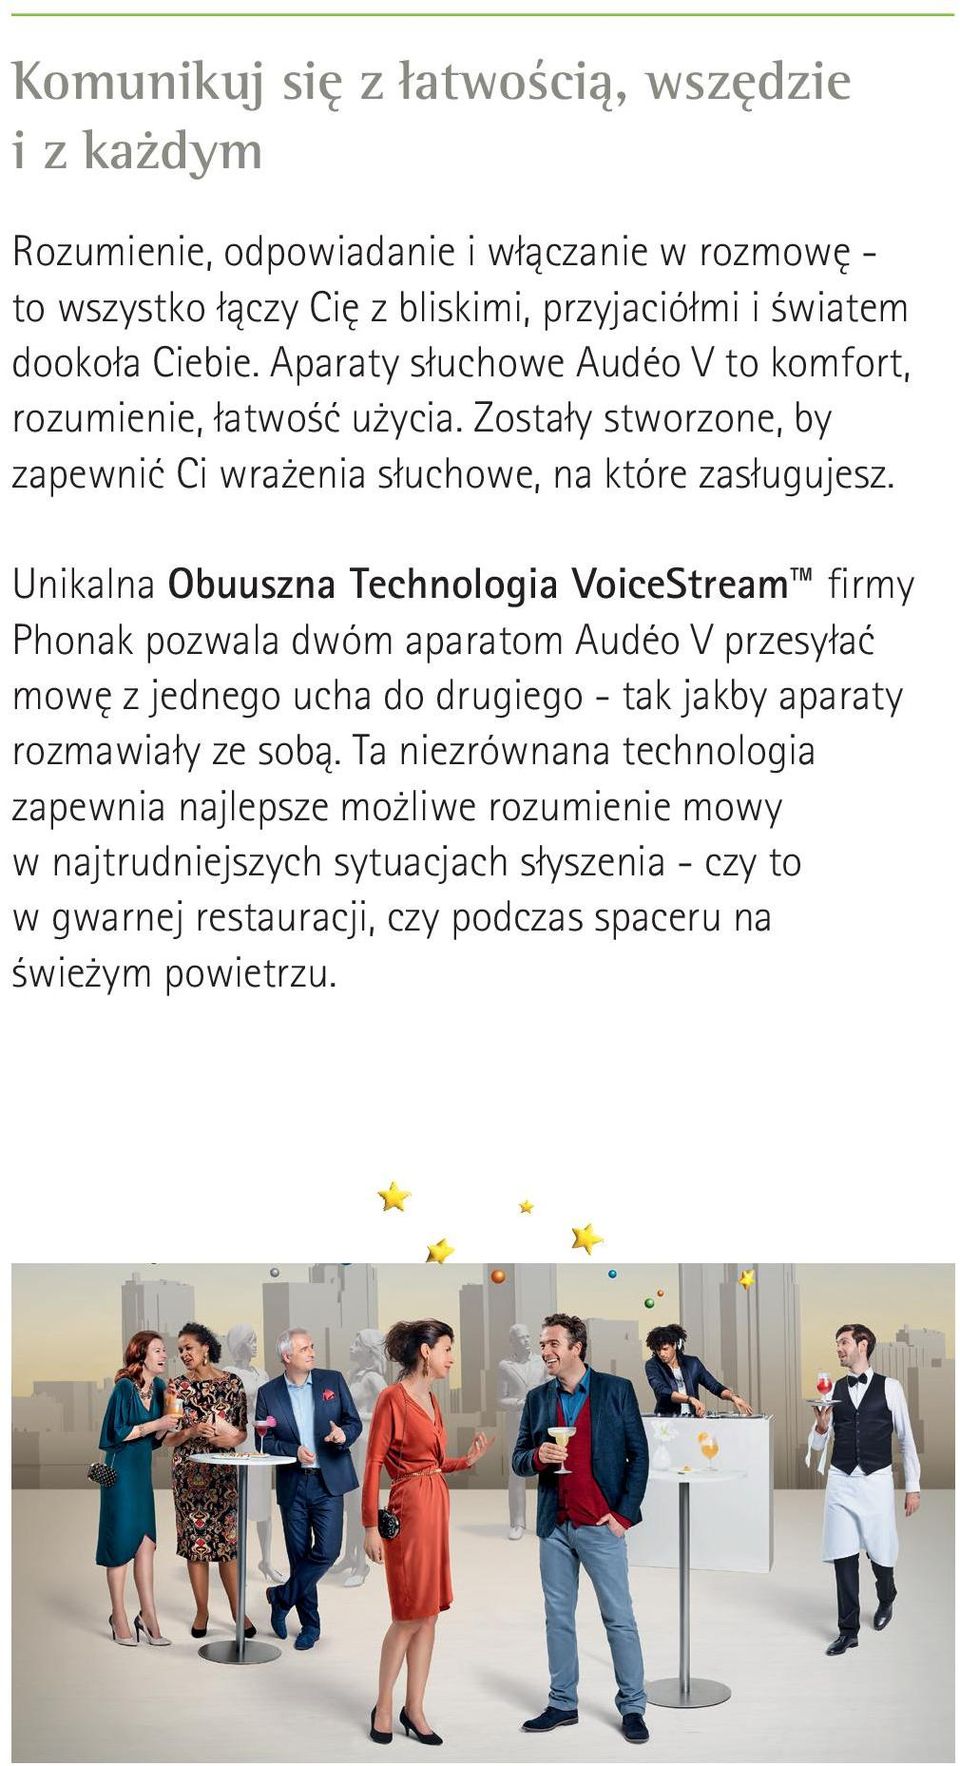 Unikalna Obuuszna Technologia VoiceStream firmy Phonak pozwala dwóm aparatom Audéo V przesyłać mowę z jednego ucha do drugiego - tak jakby aparaty rozmawiały ze